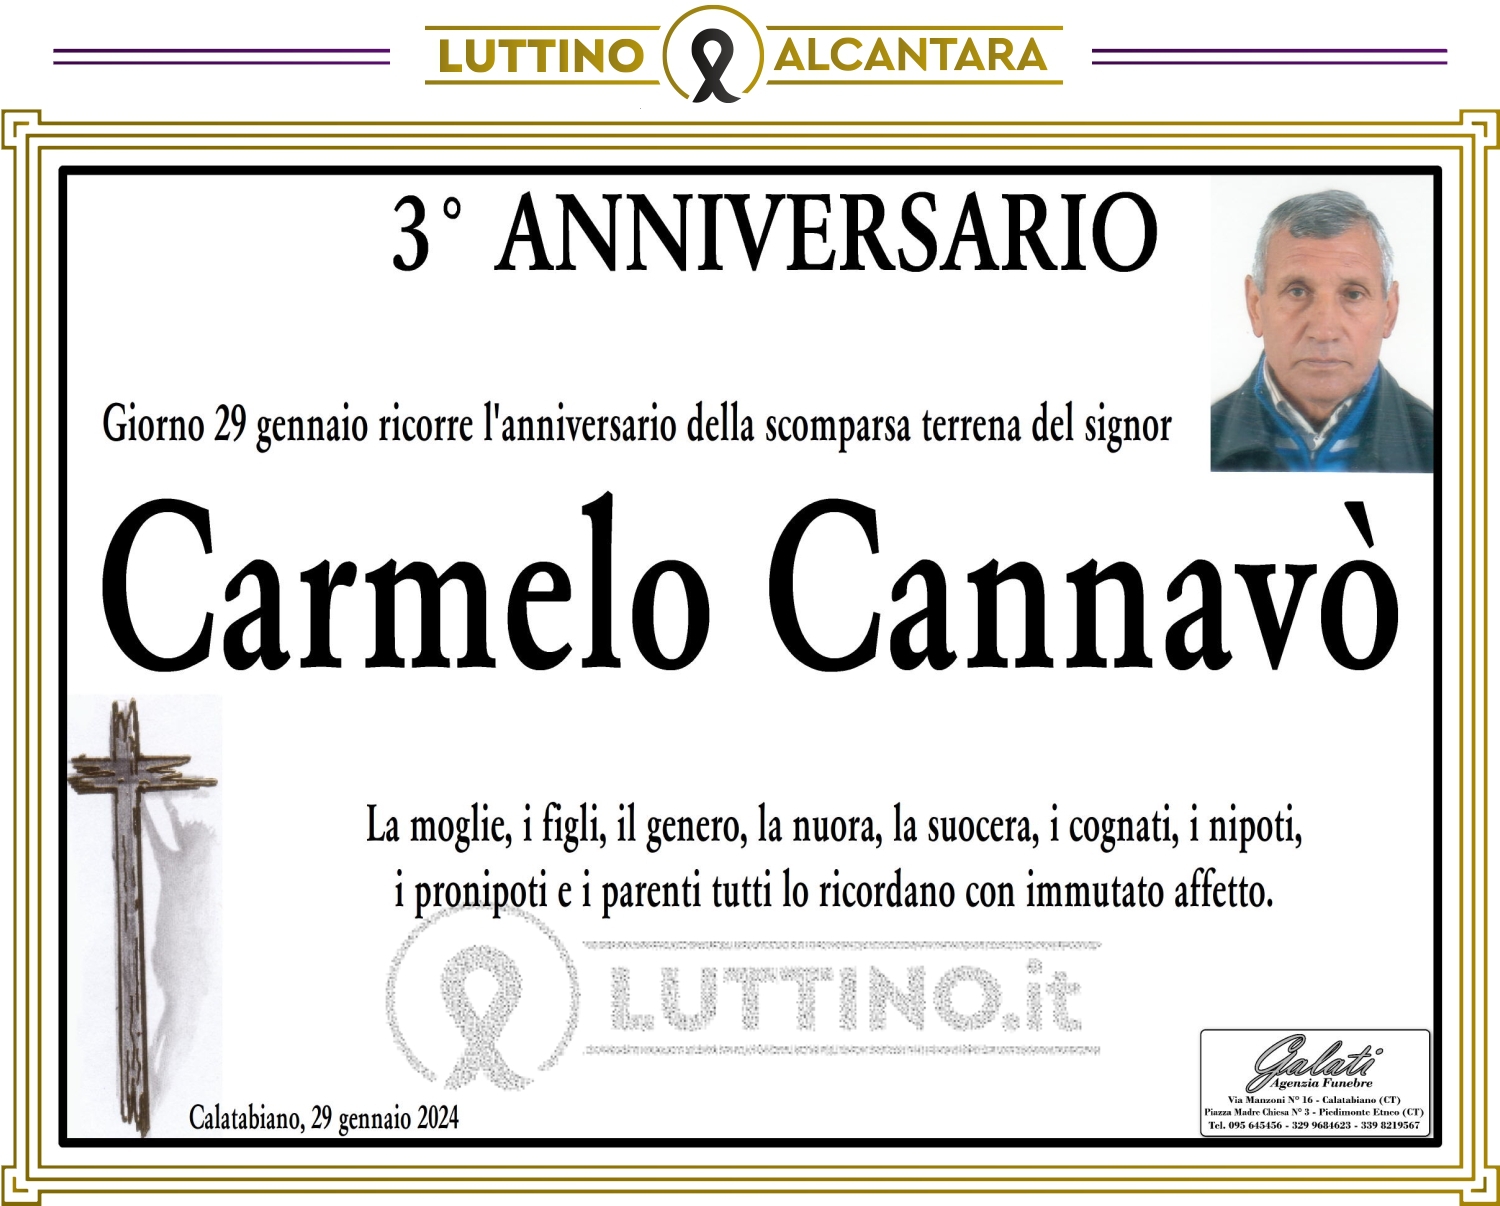 Carmelo Cannavò